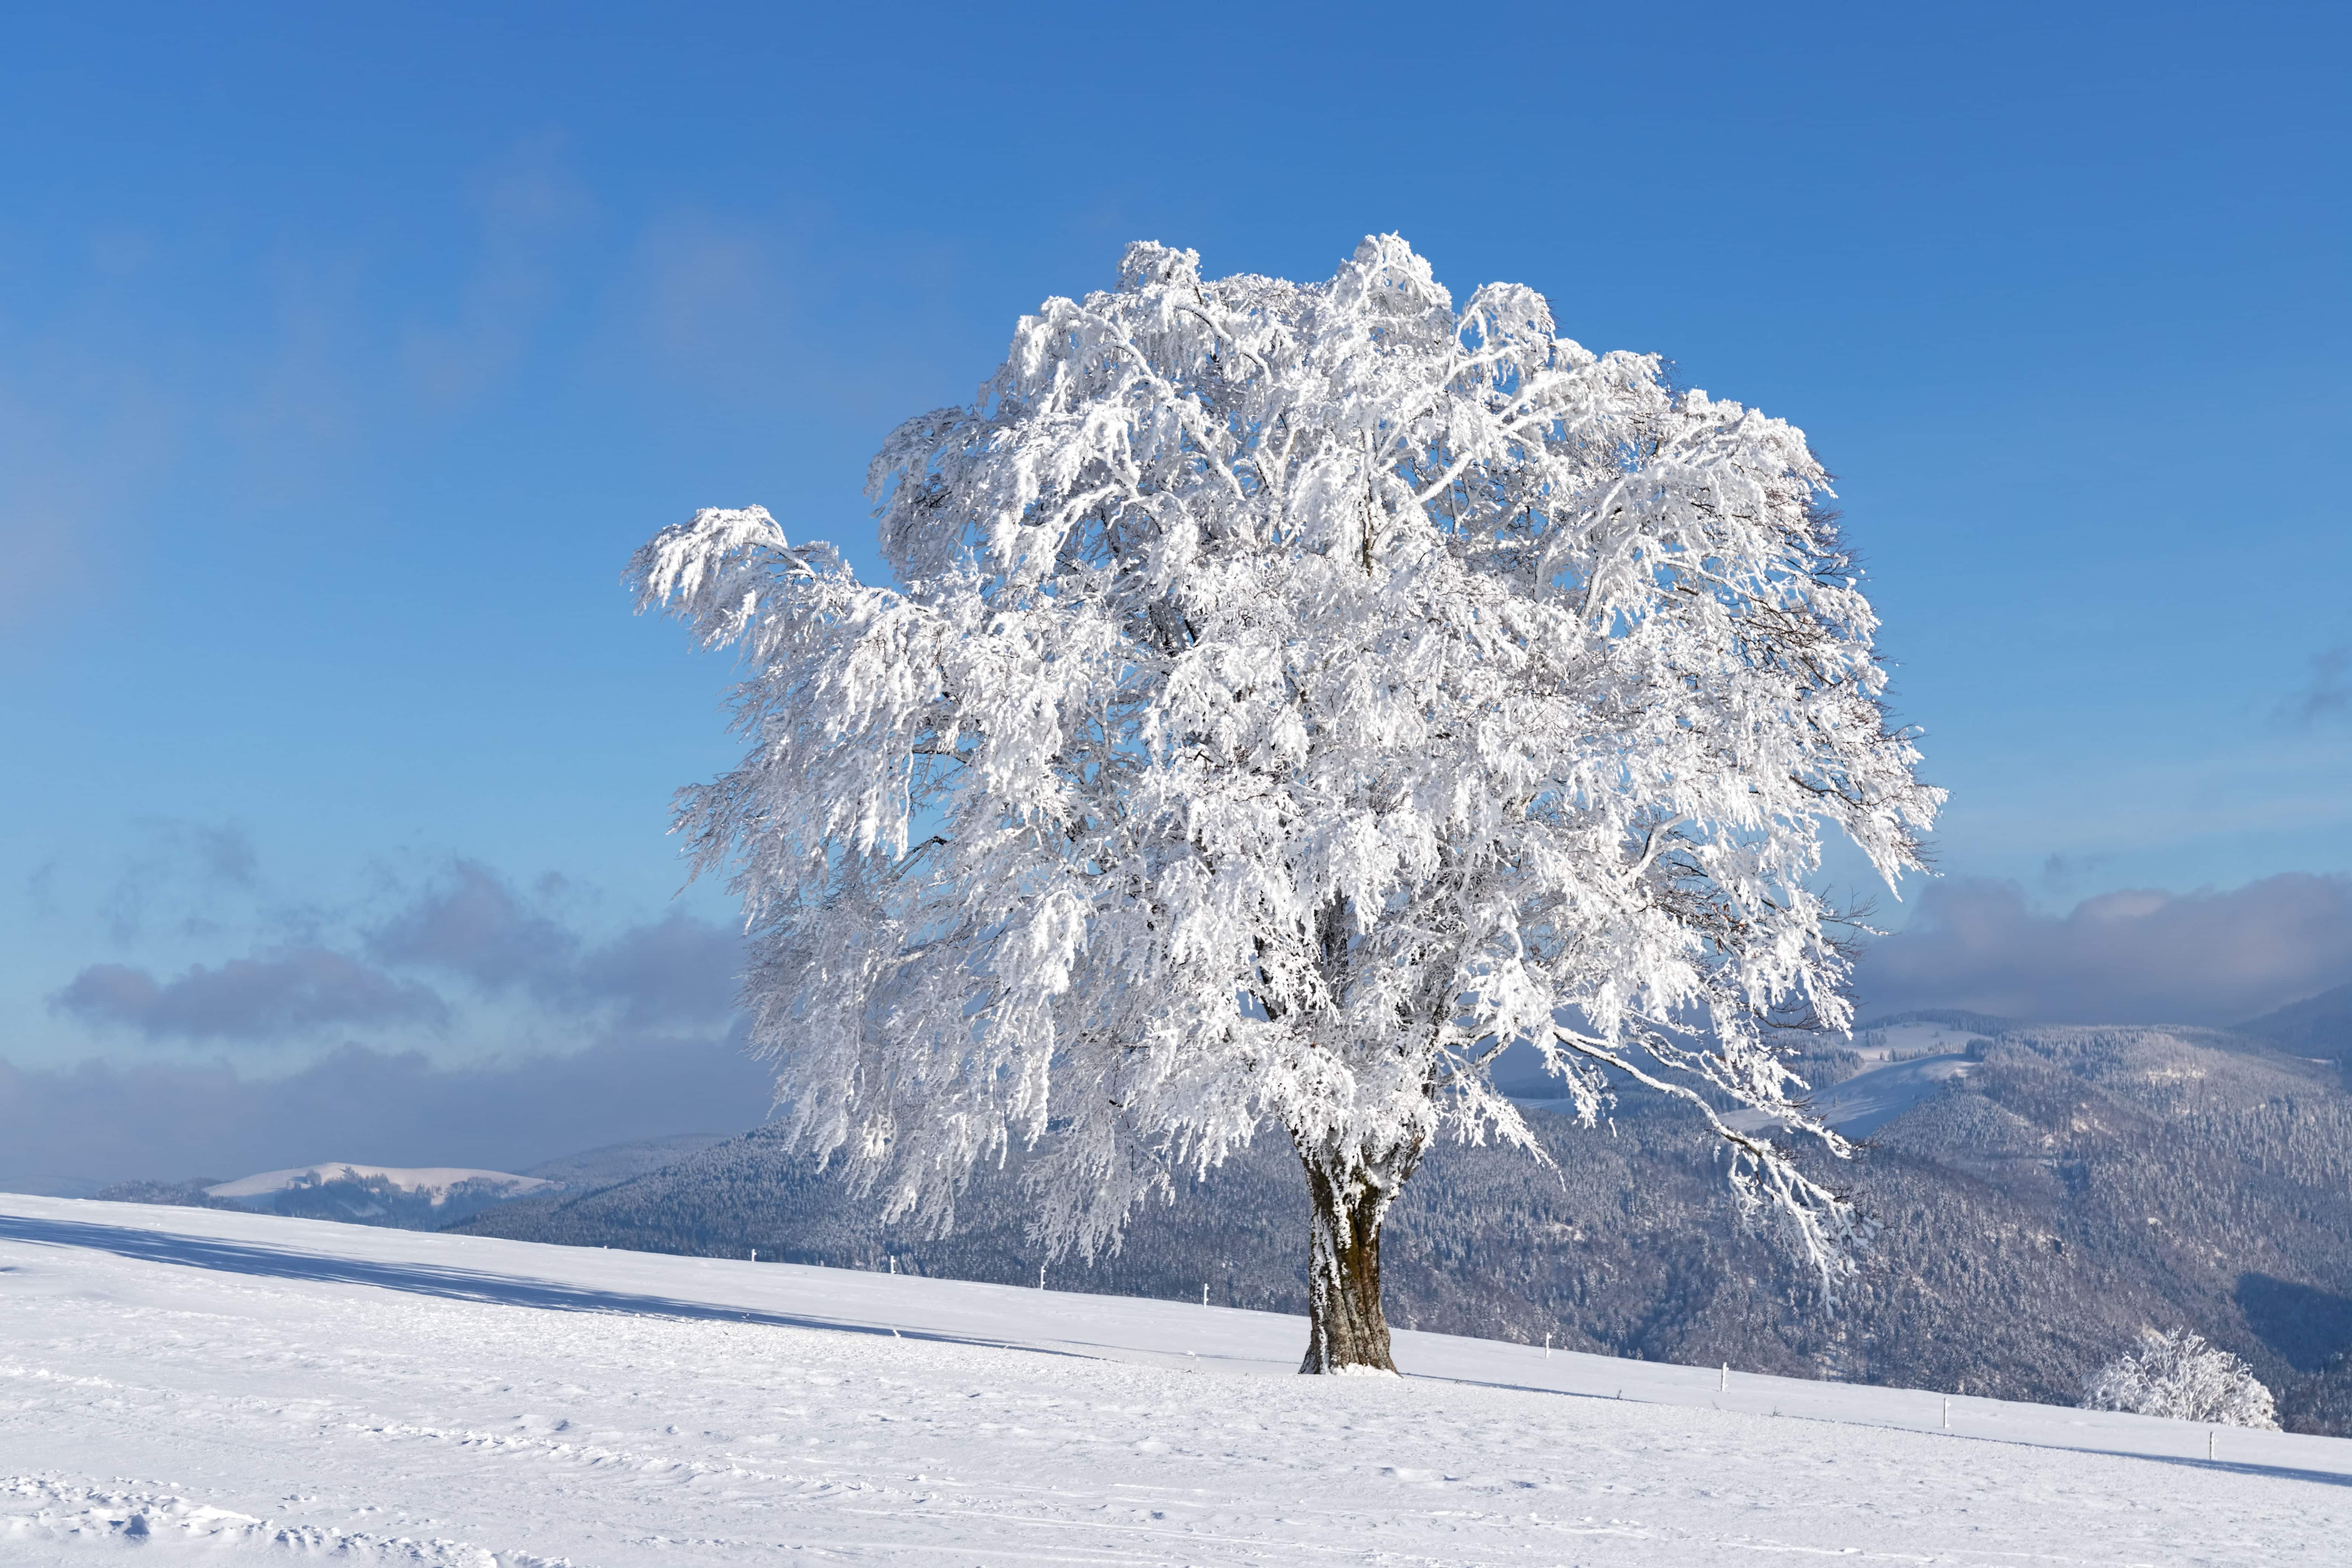 Fotowalk #4 - Schauinsland im Winter - Verschneiter Baum